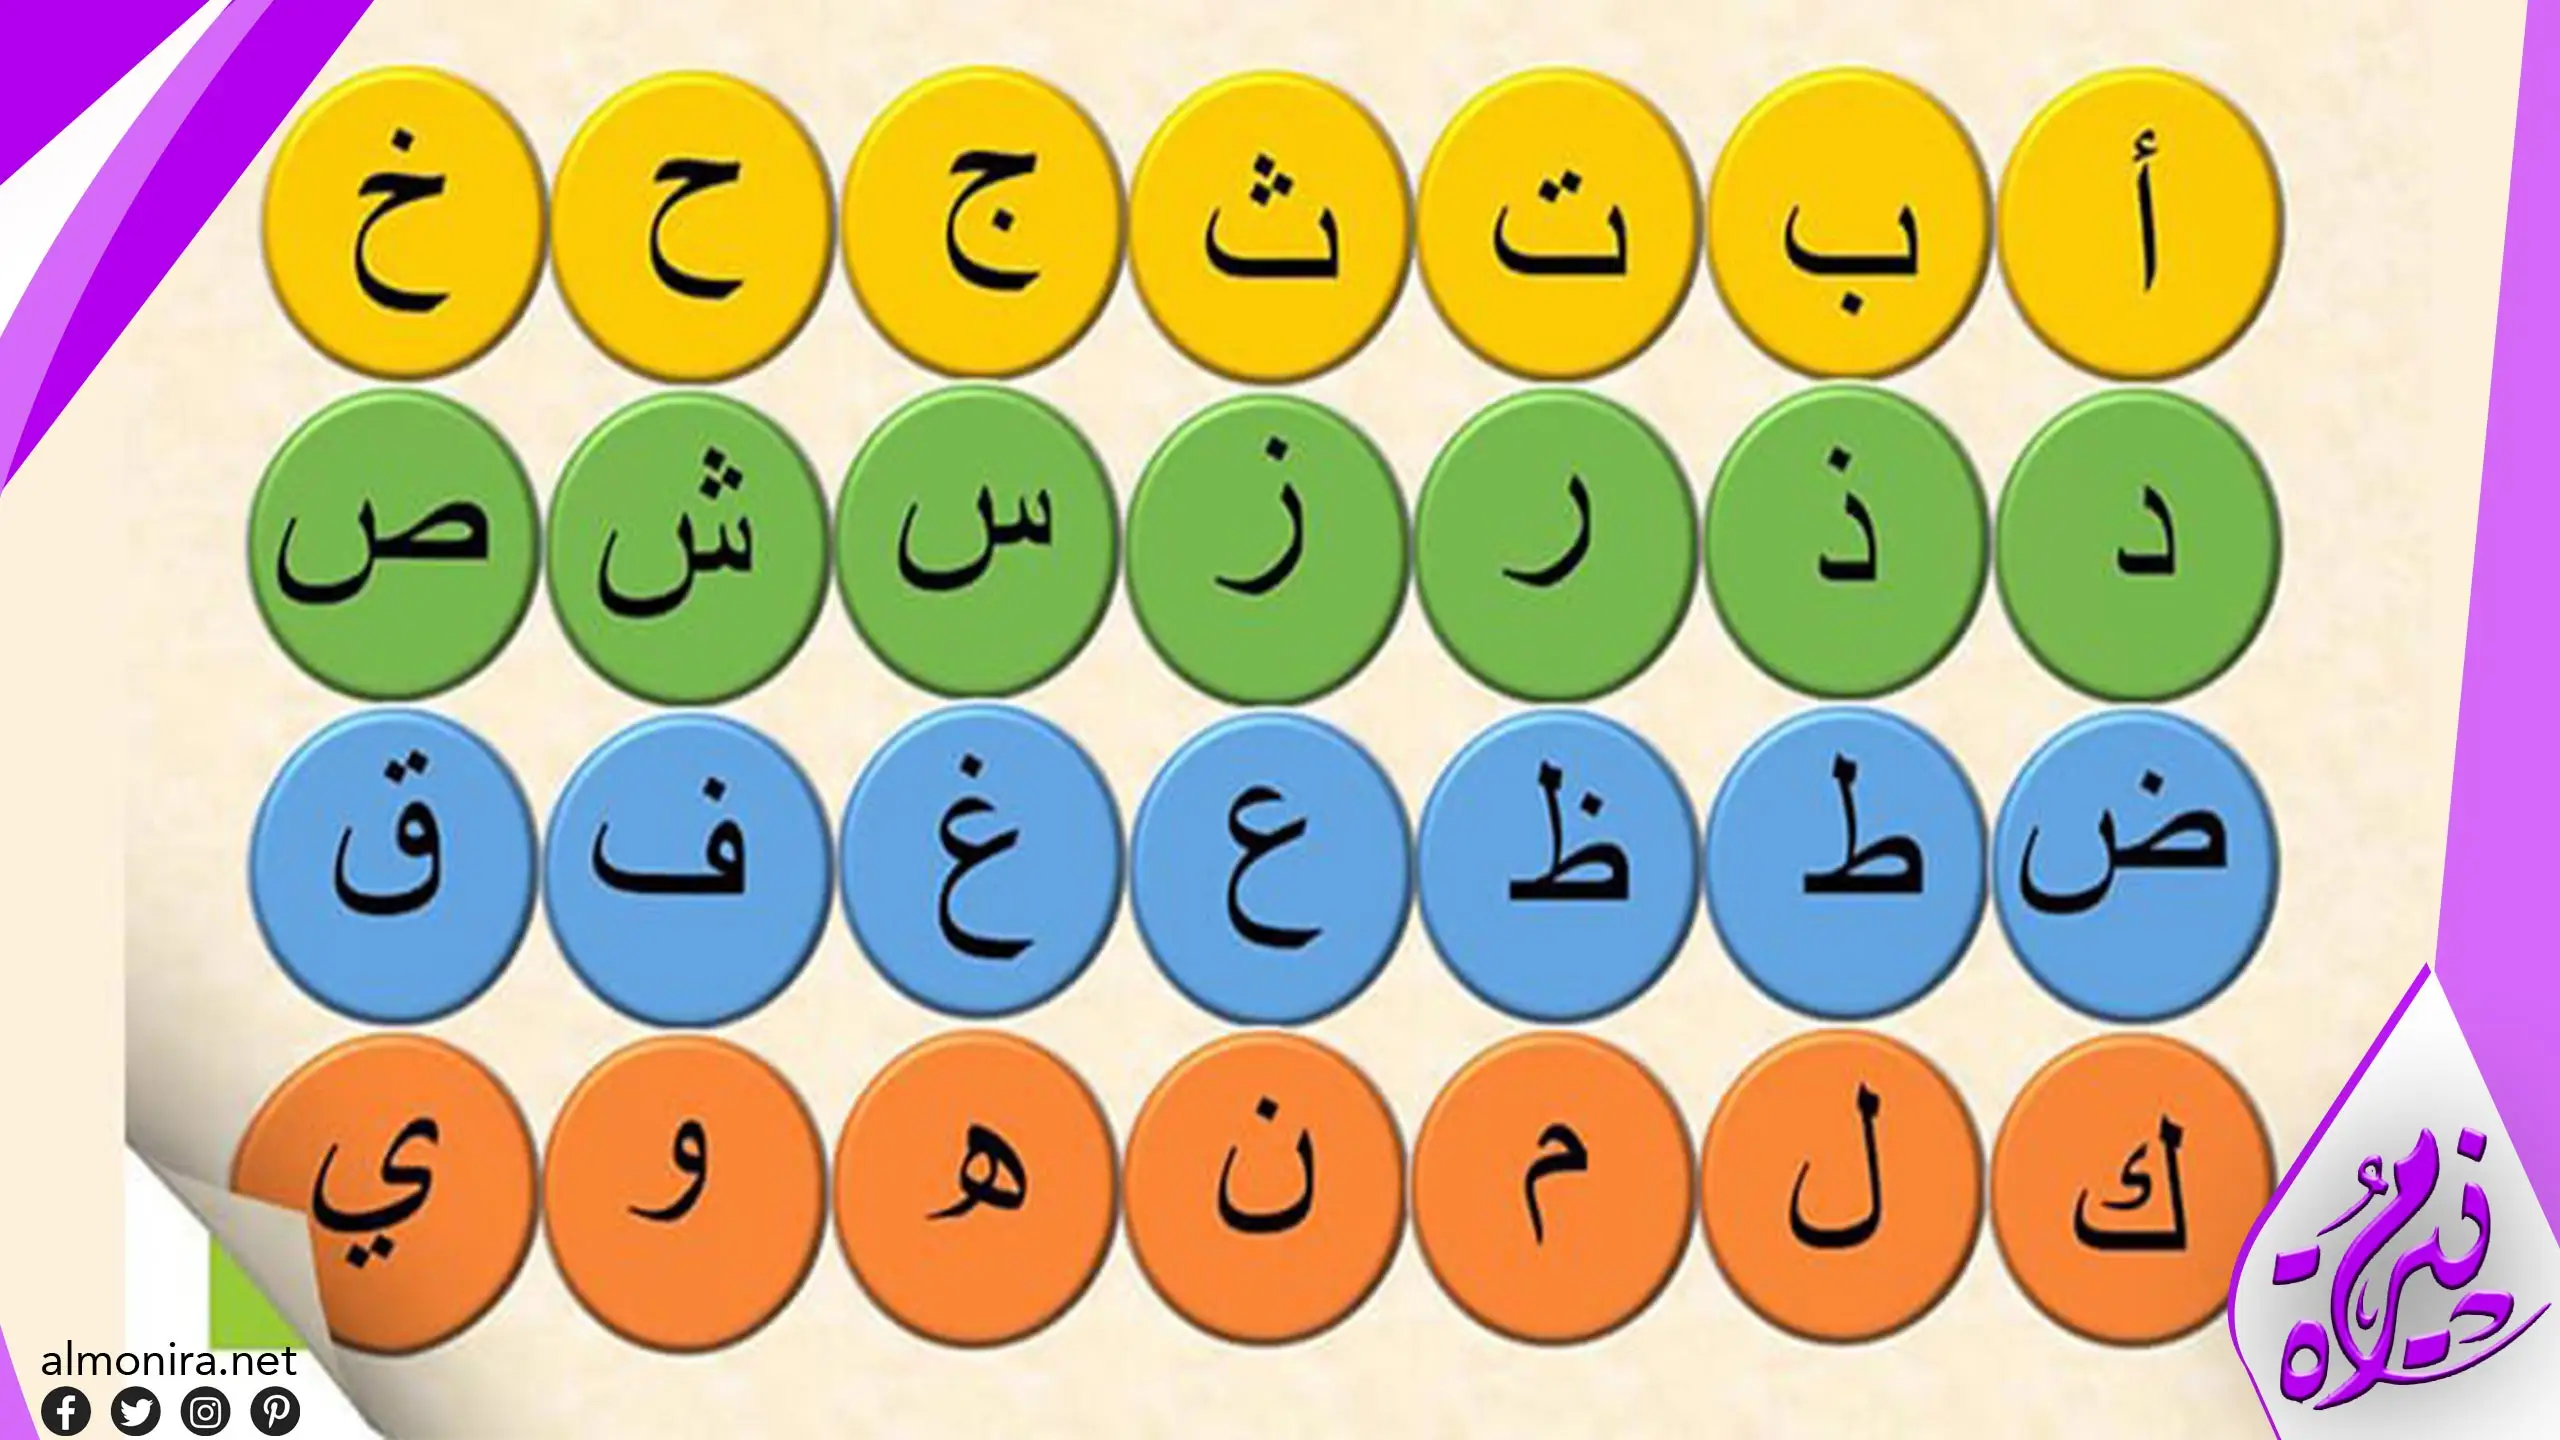 الكلمات التي تحتوي على الحرفين Al و T من اللغة العربية ومعانيها